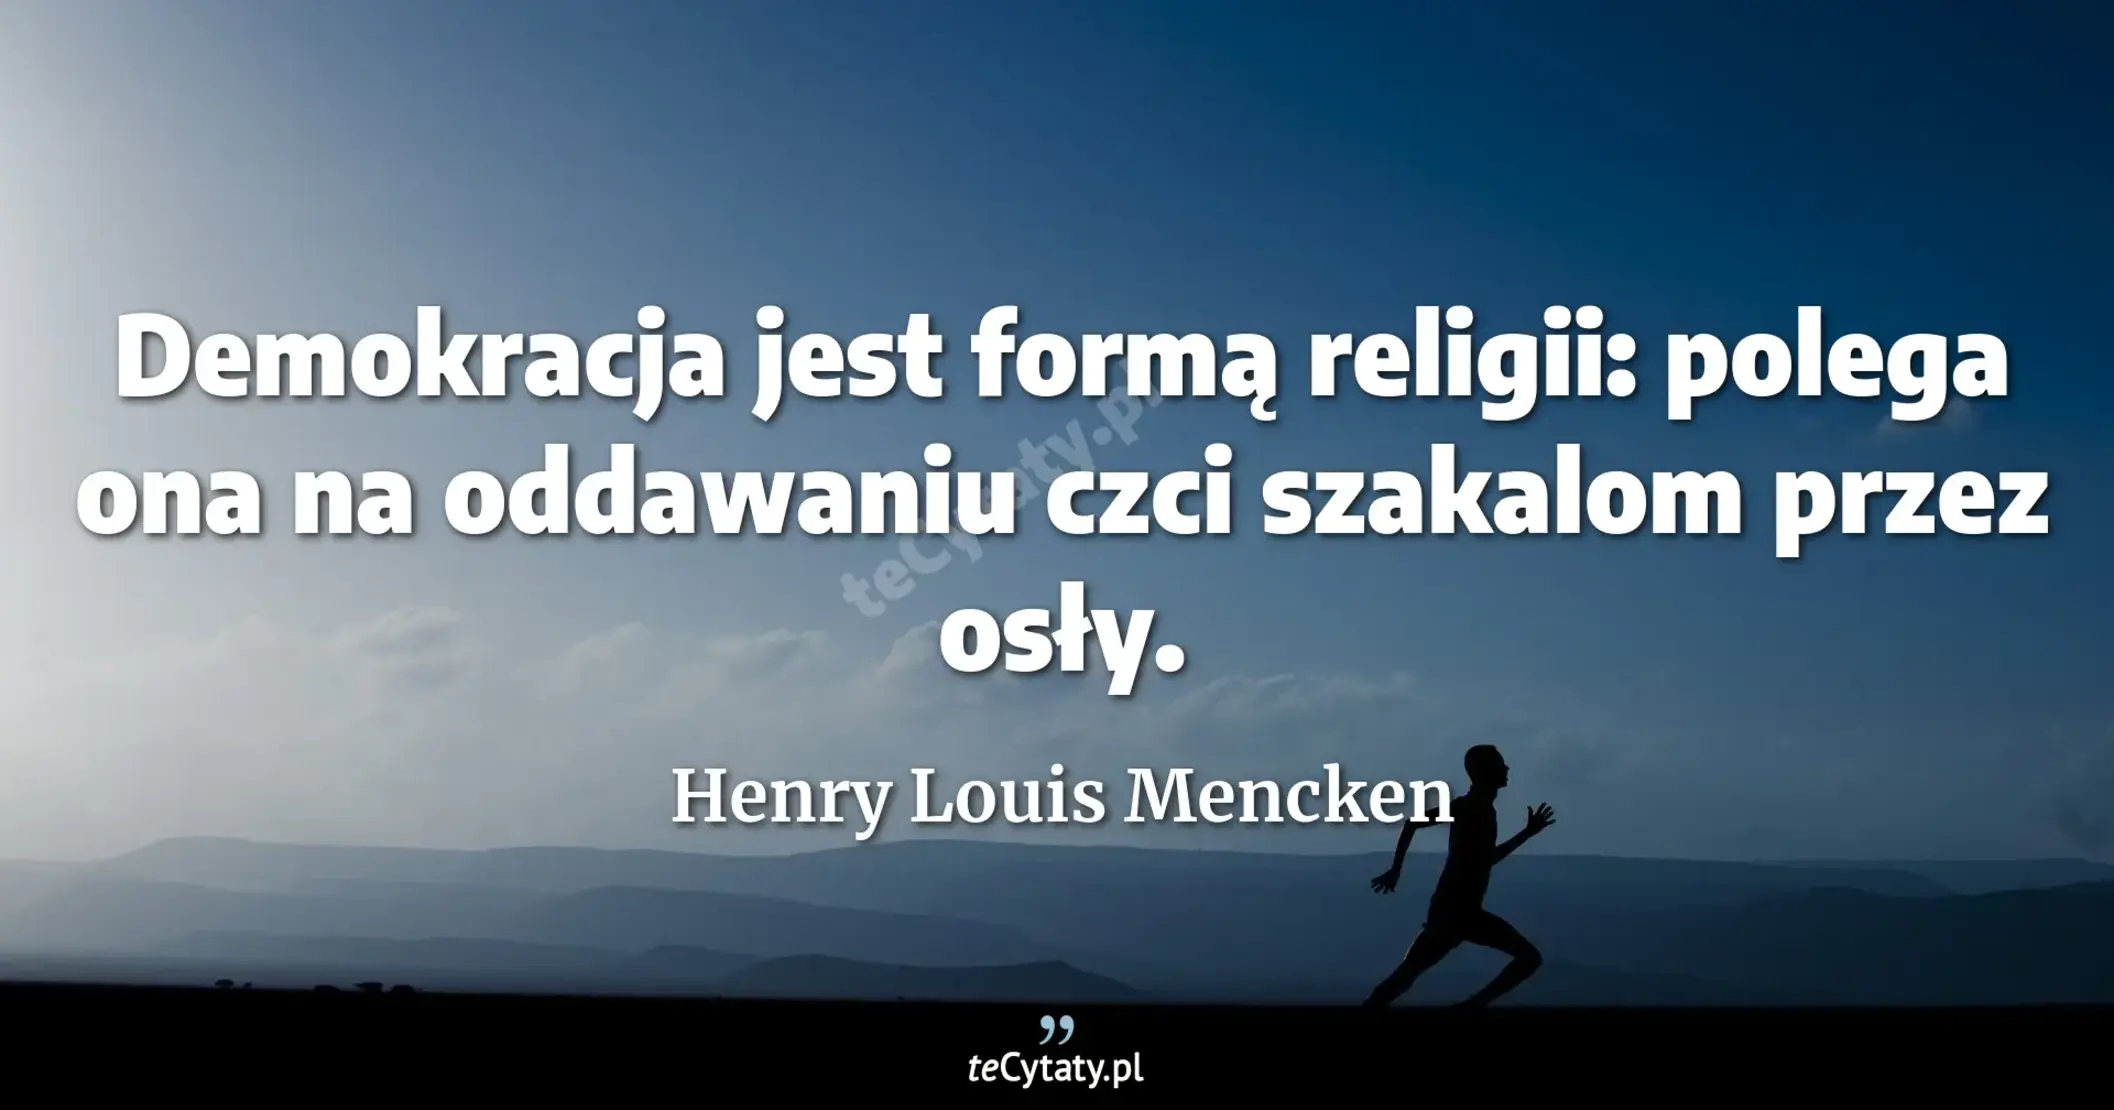 Demokracja jest formą religii: polega ona na oddawaniu czci szakalom przez osły. - Henry Louis Mencken